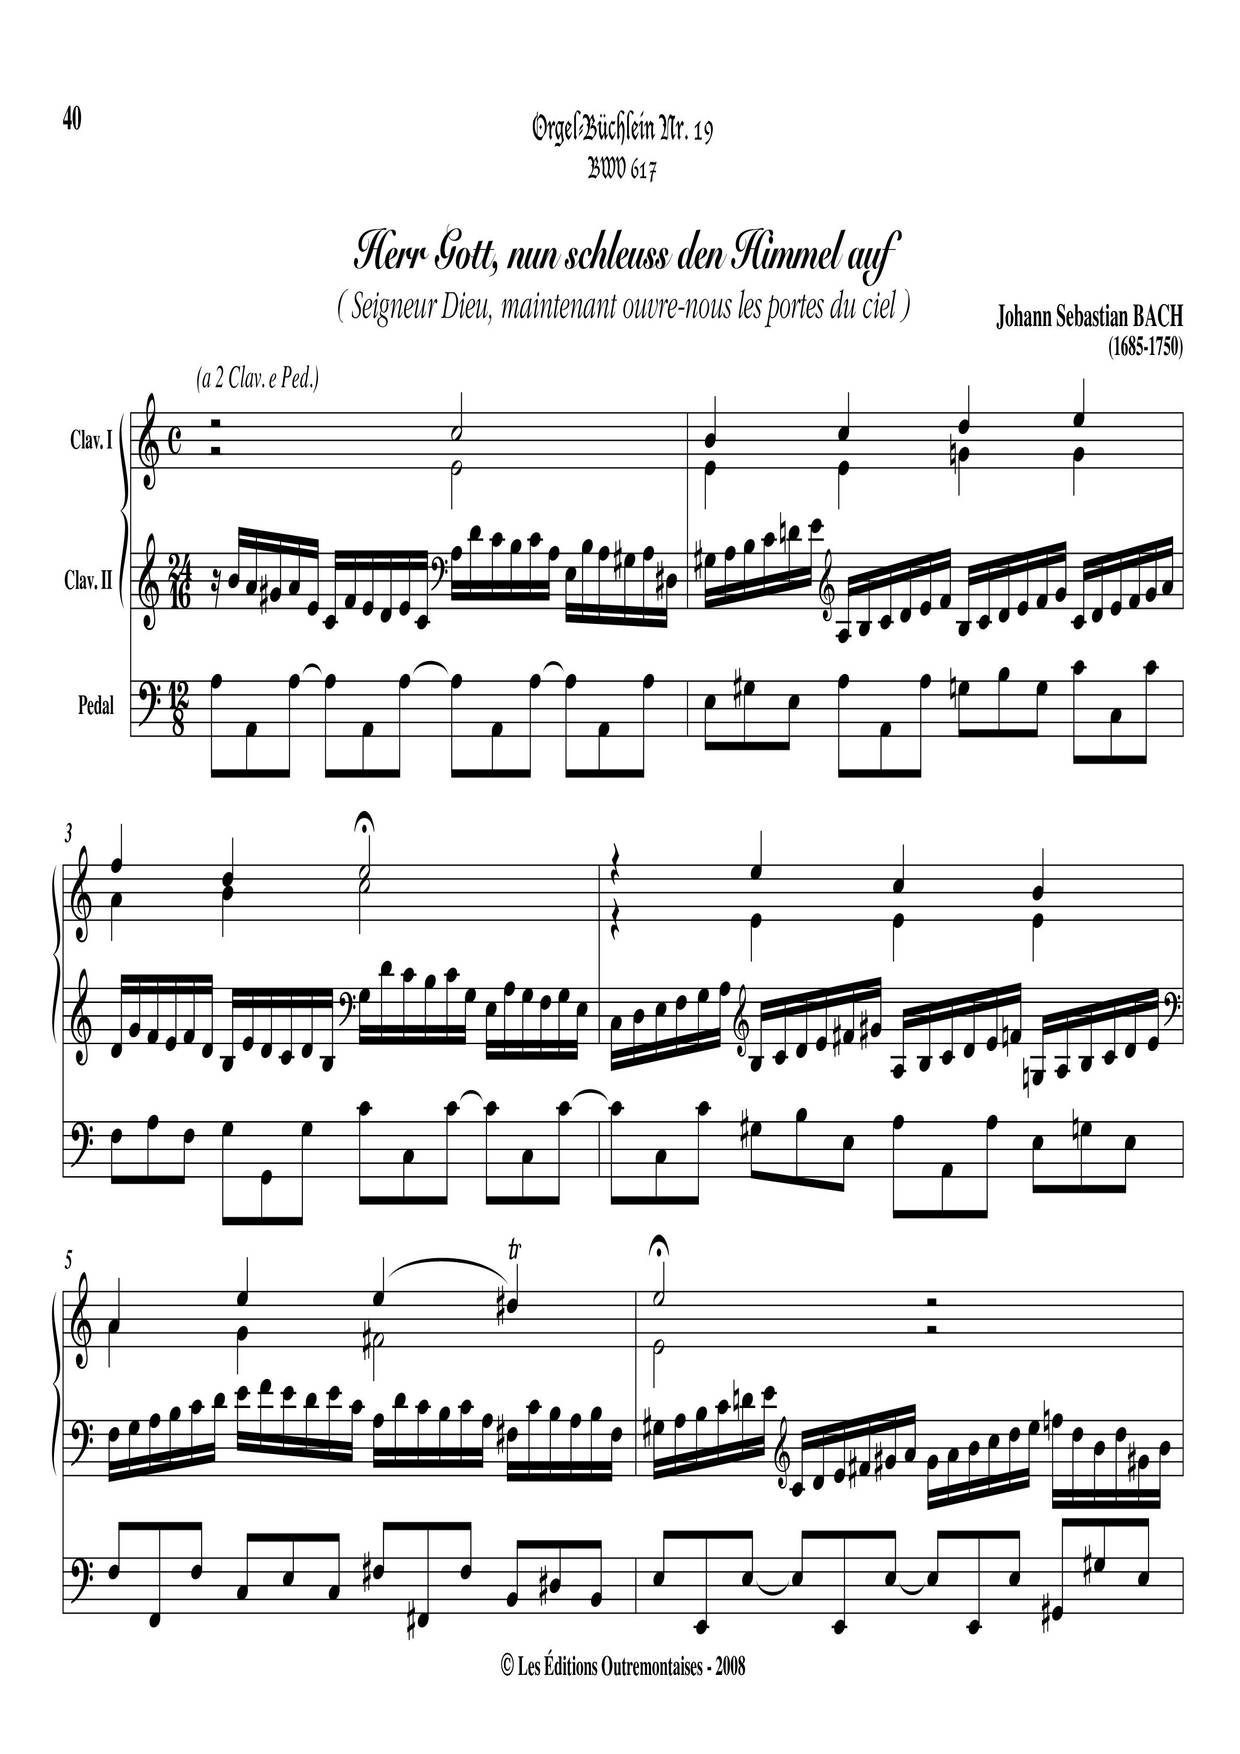 Chorale Prelude 'Herr Gott Nun Schleuss Den Himmel Auf', BWV 617琴谱